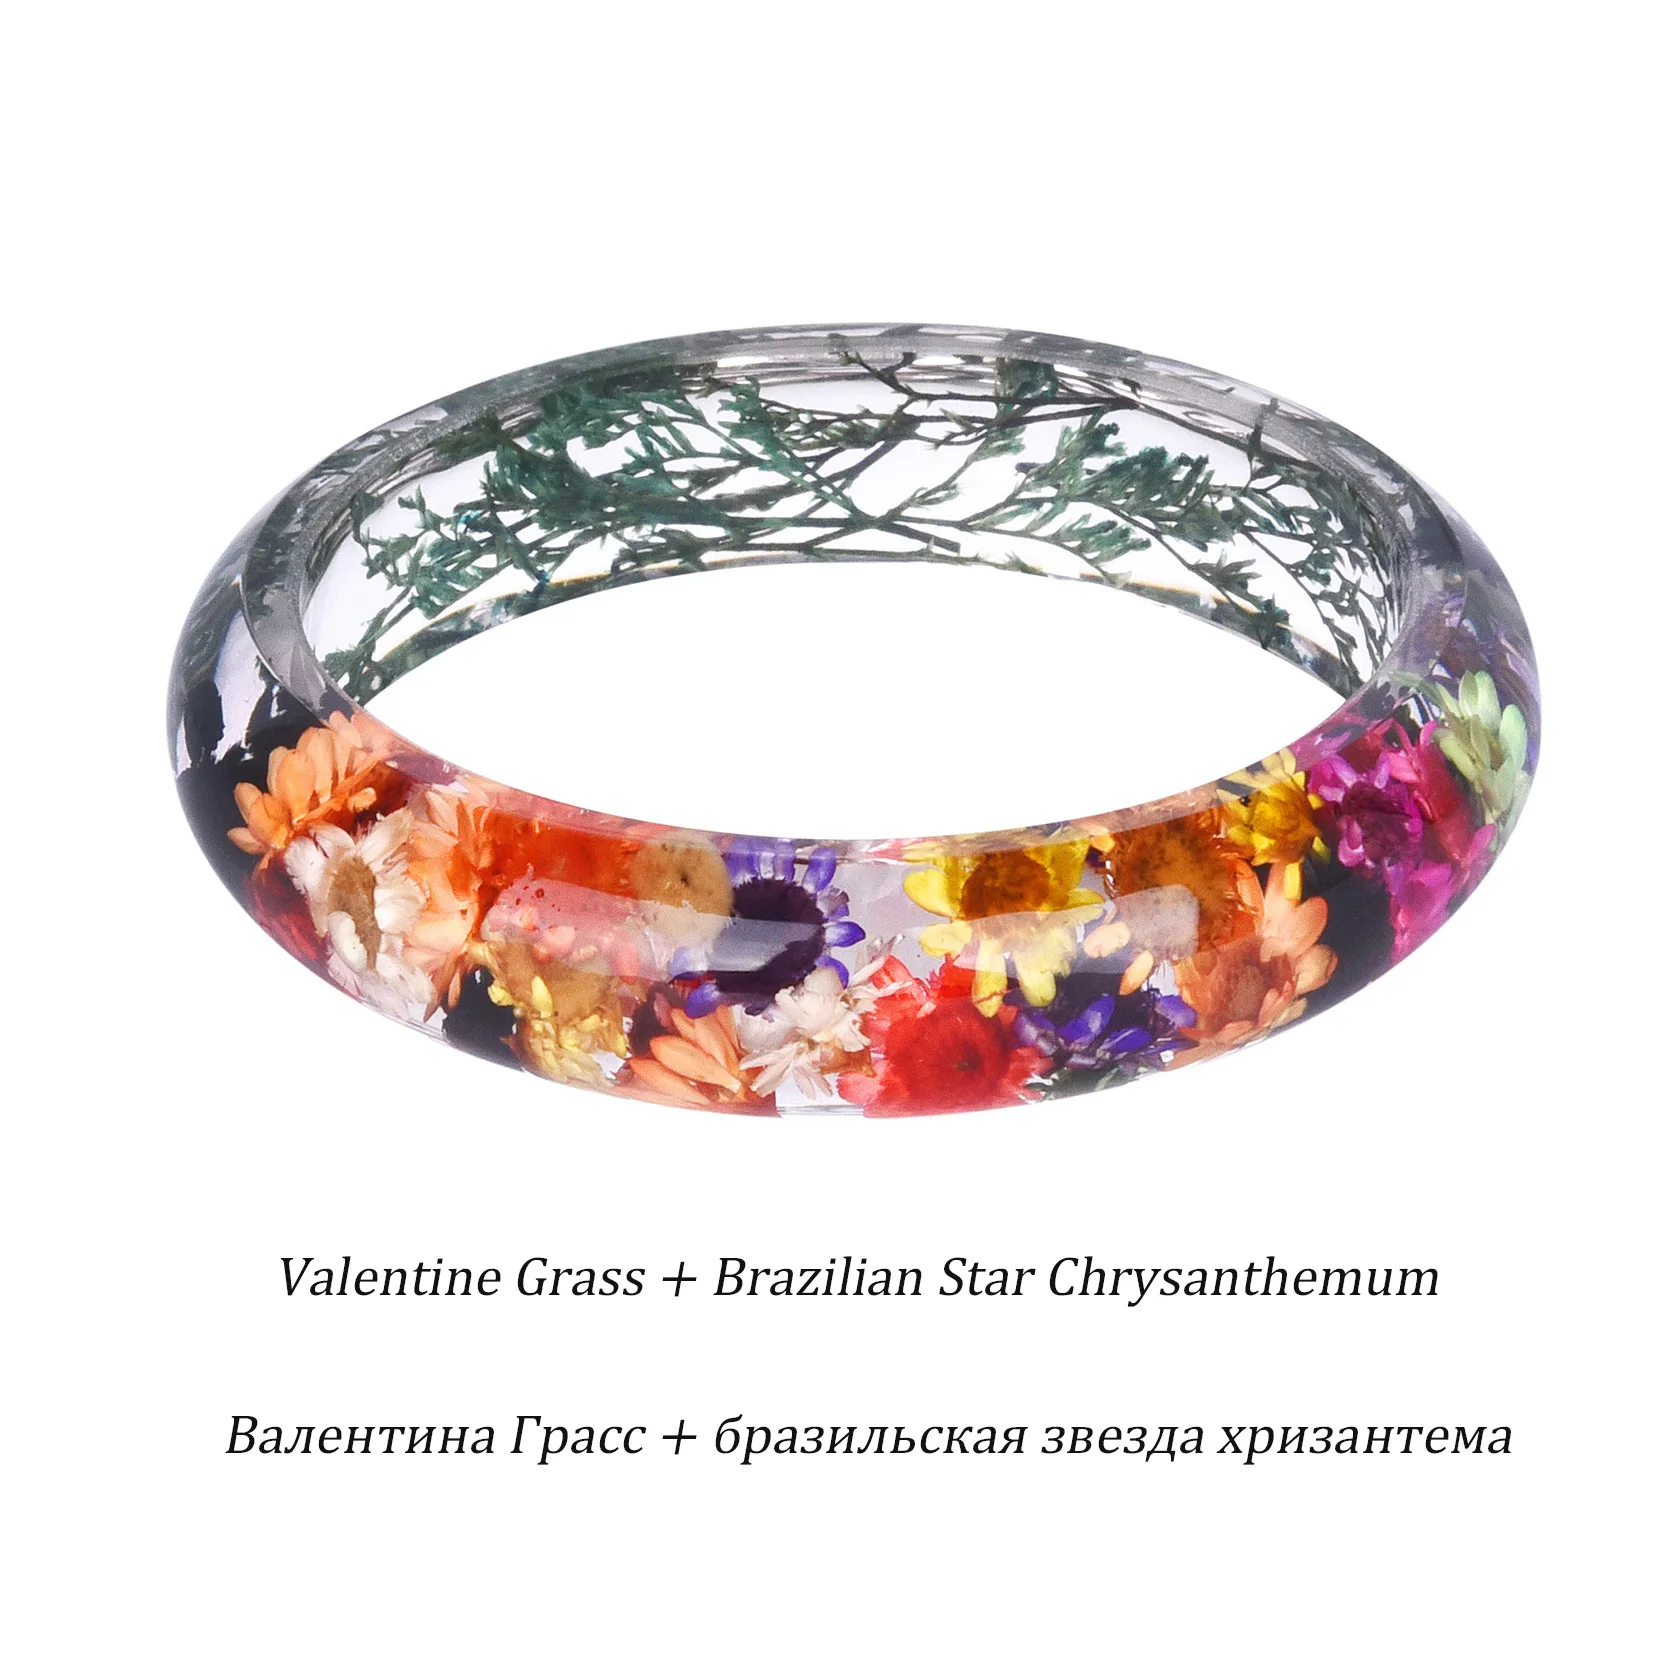 KCALOE натуральный высушенный цветок смоляные браслеты браслет для женщин ребенок дыхание бразильская звезда Хризантема Валентина трава ювелирные изделия